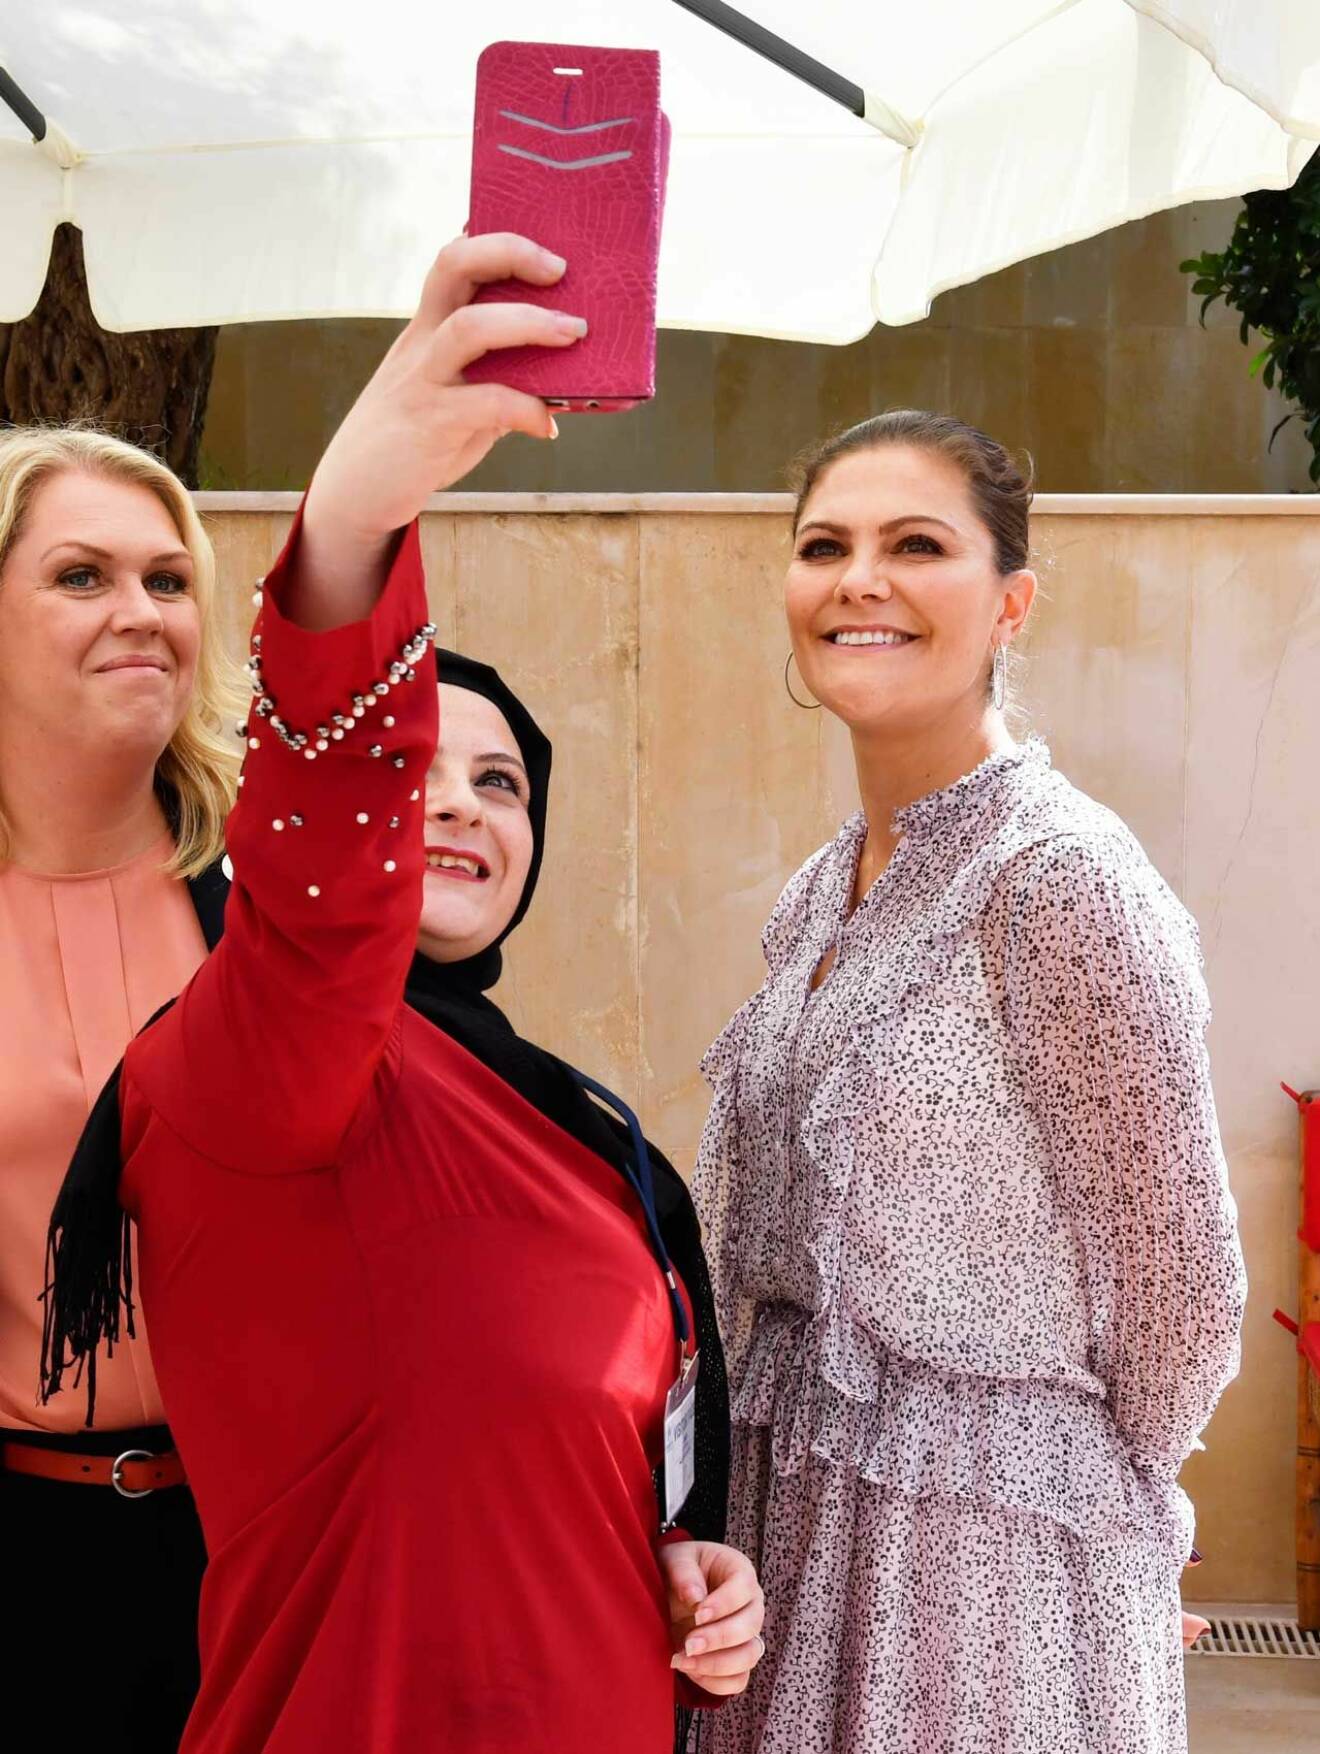 Kronprinsessan ställer gärna upp på en selfie, som här i Libanons huvudstad Beirut.